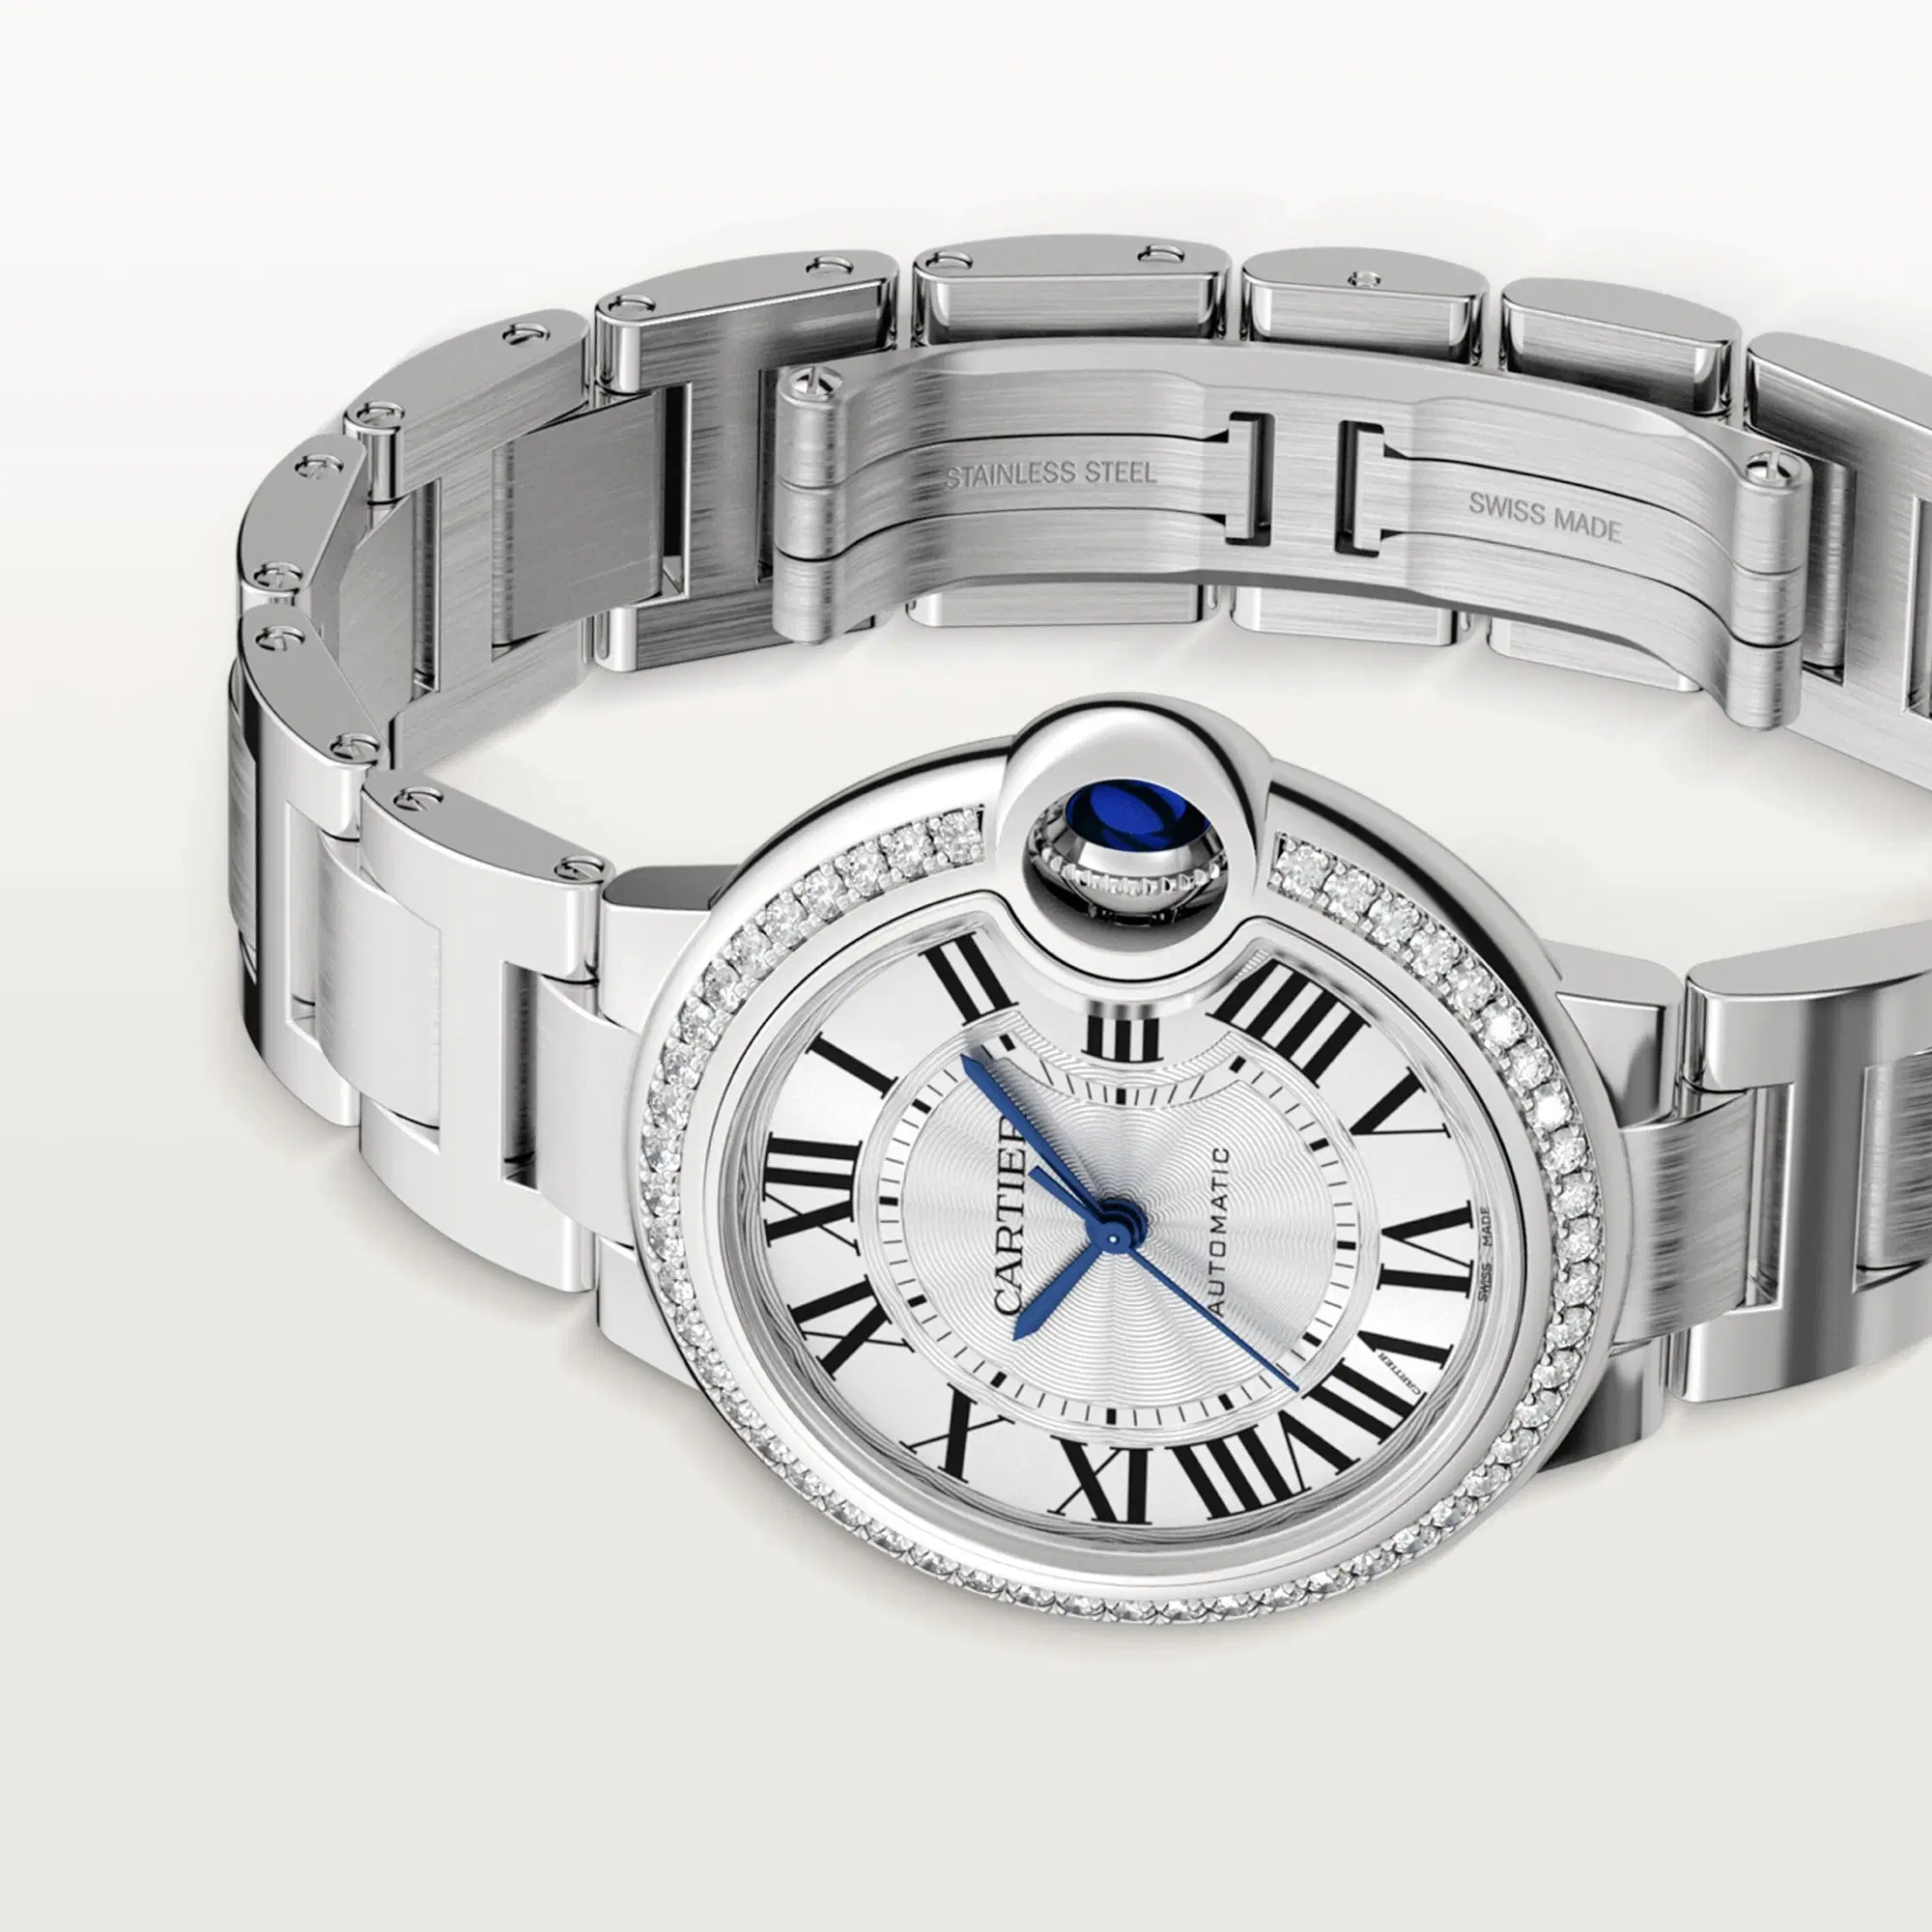 Ballon Bleu de Cartier Watch, Silver Guilloche Dial with Diamonds, 33mm
